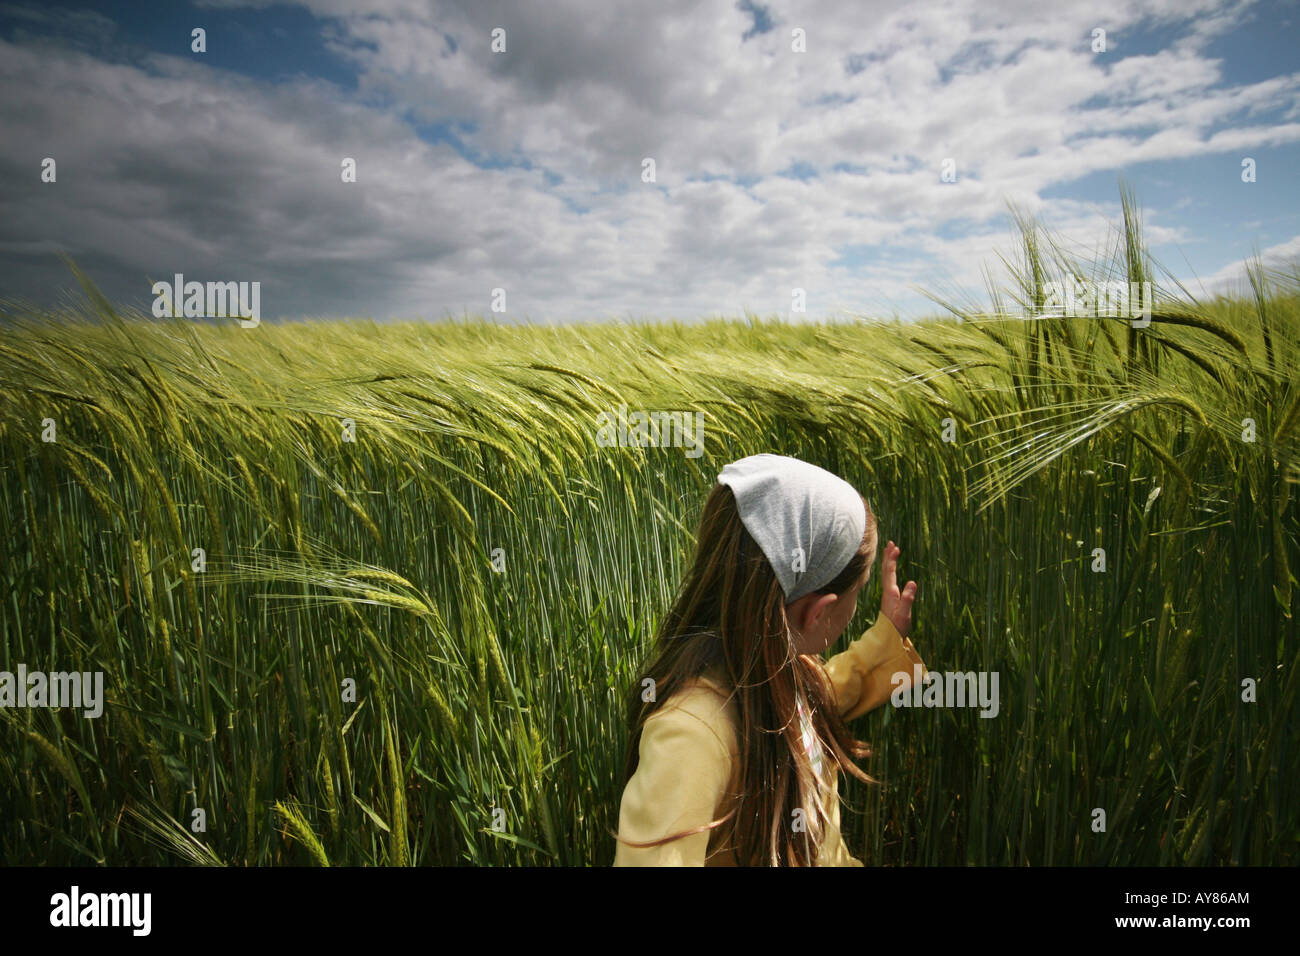 girl in field Stock Photo